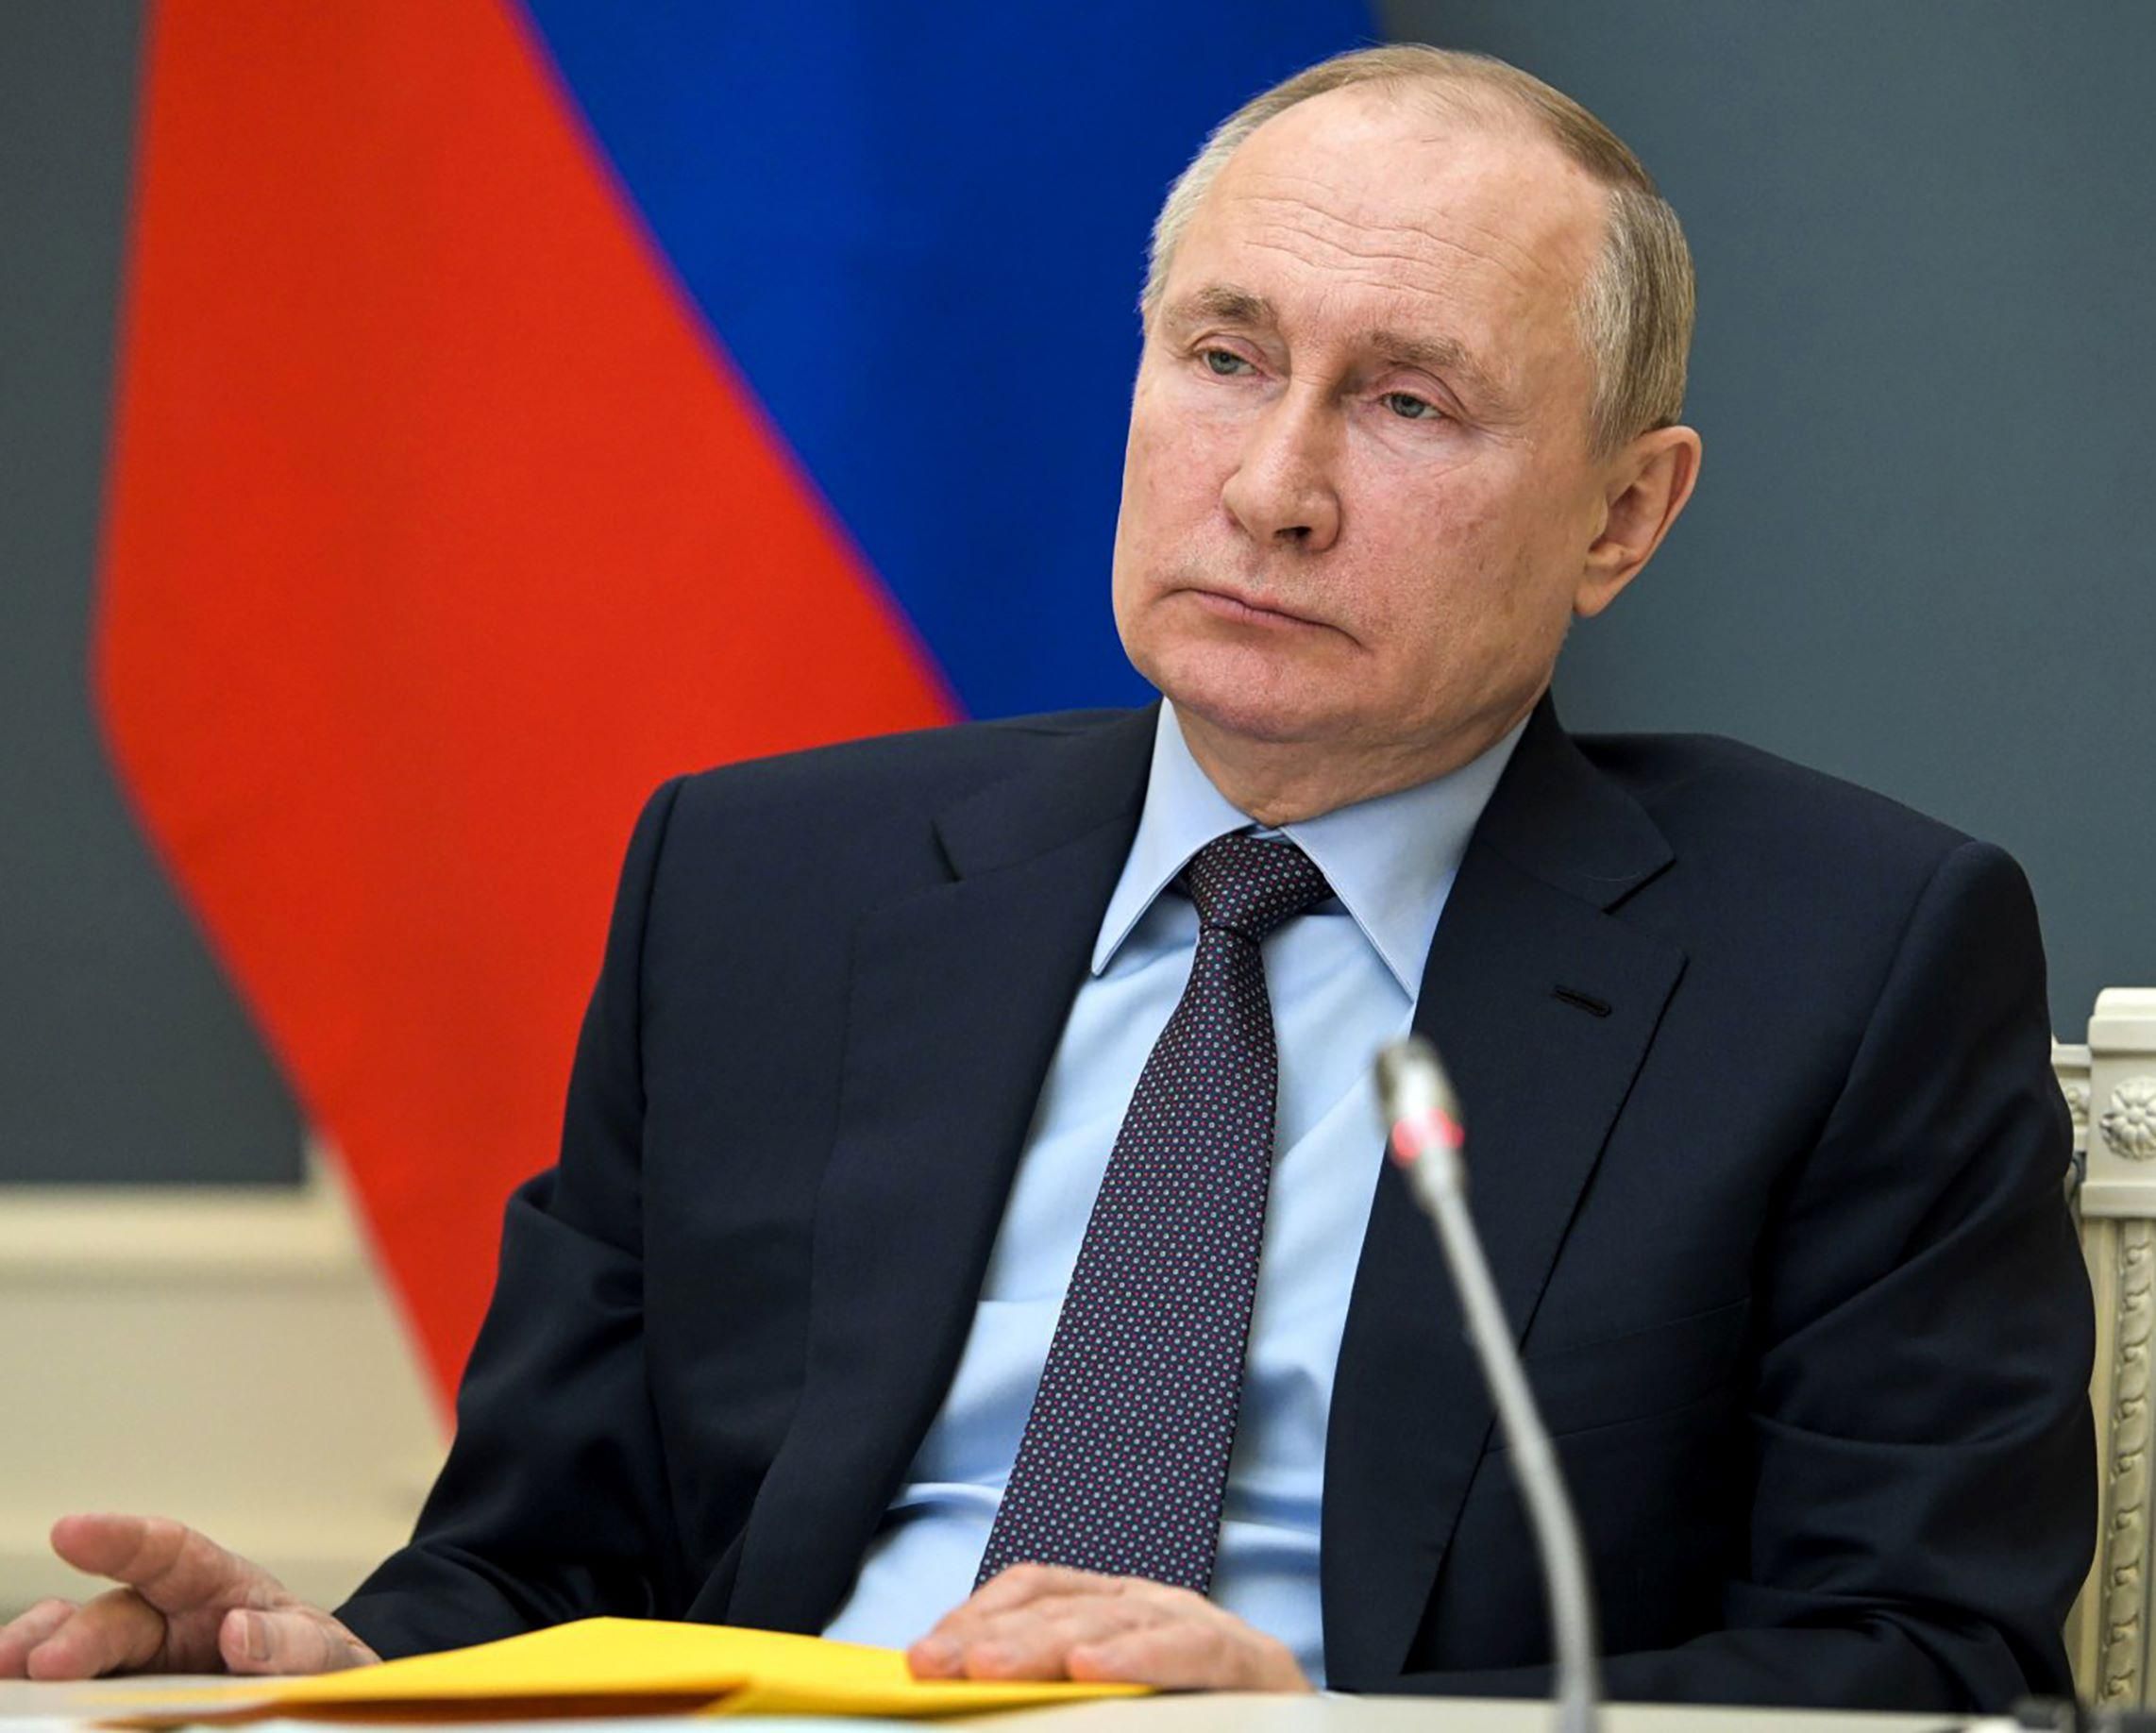 Putyin elnök odaszólt  Gazprom vezérének, máris esni kezdett a földgáz ára